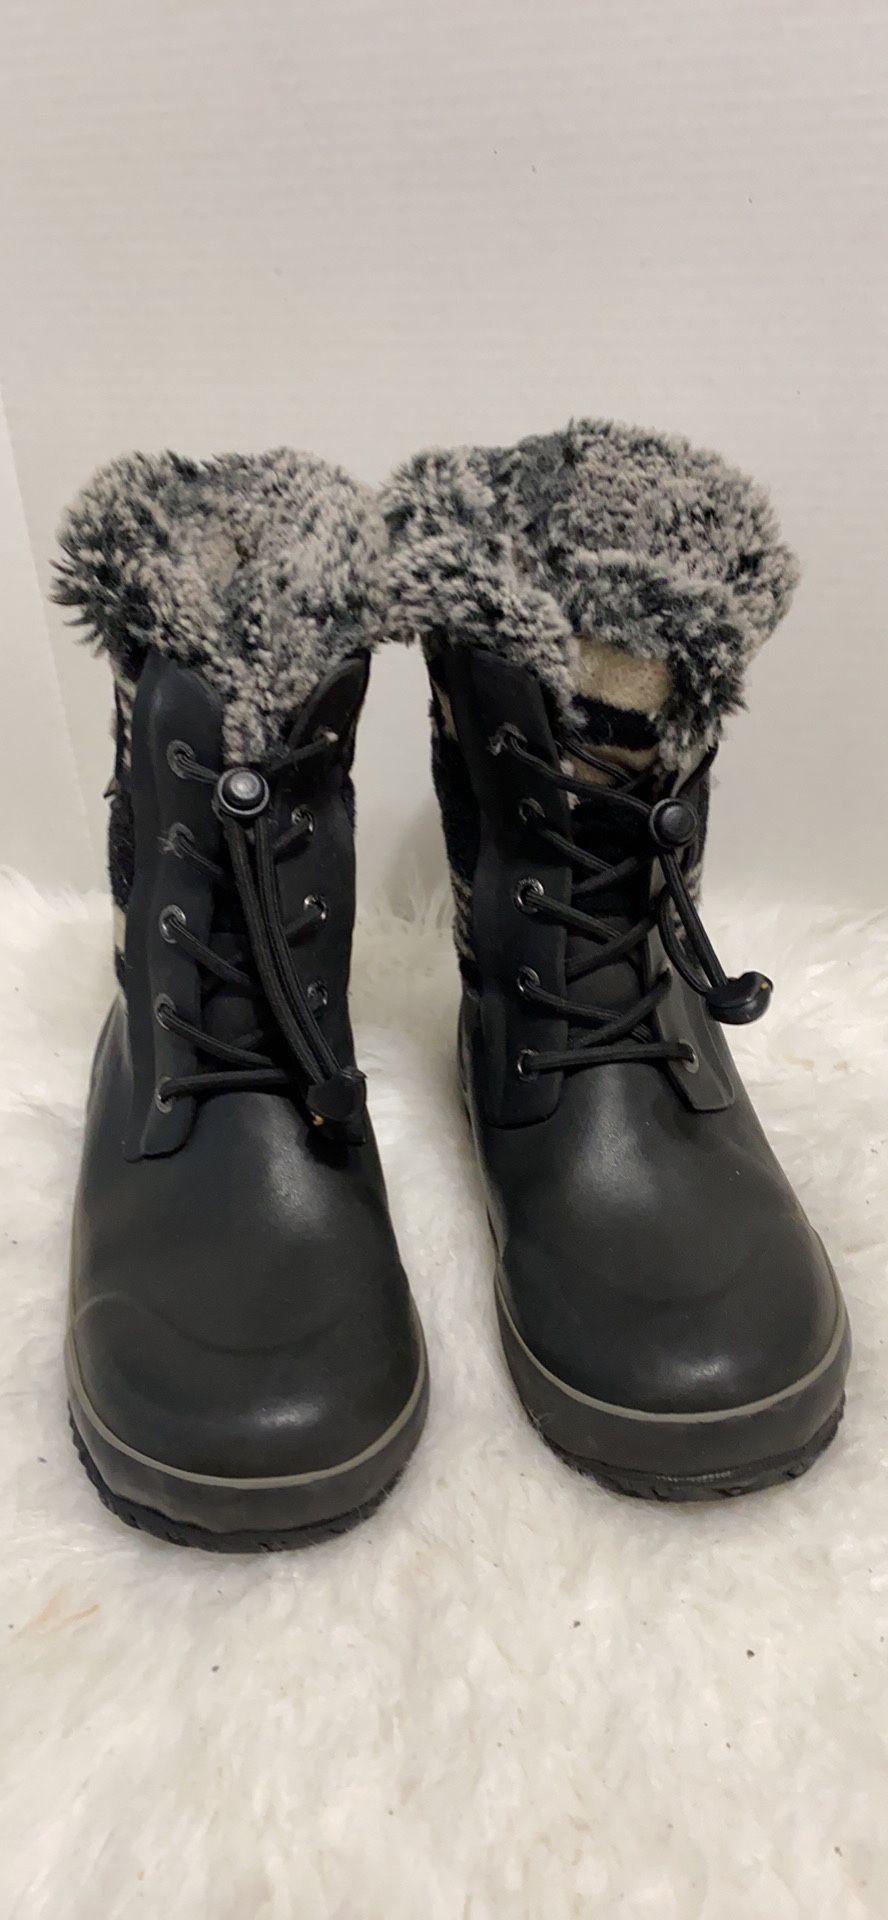 Bogs kids snow rain boots size 2